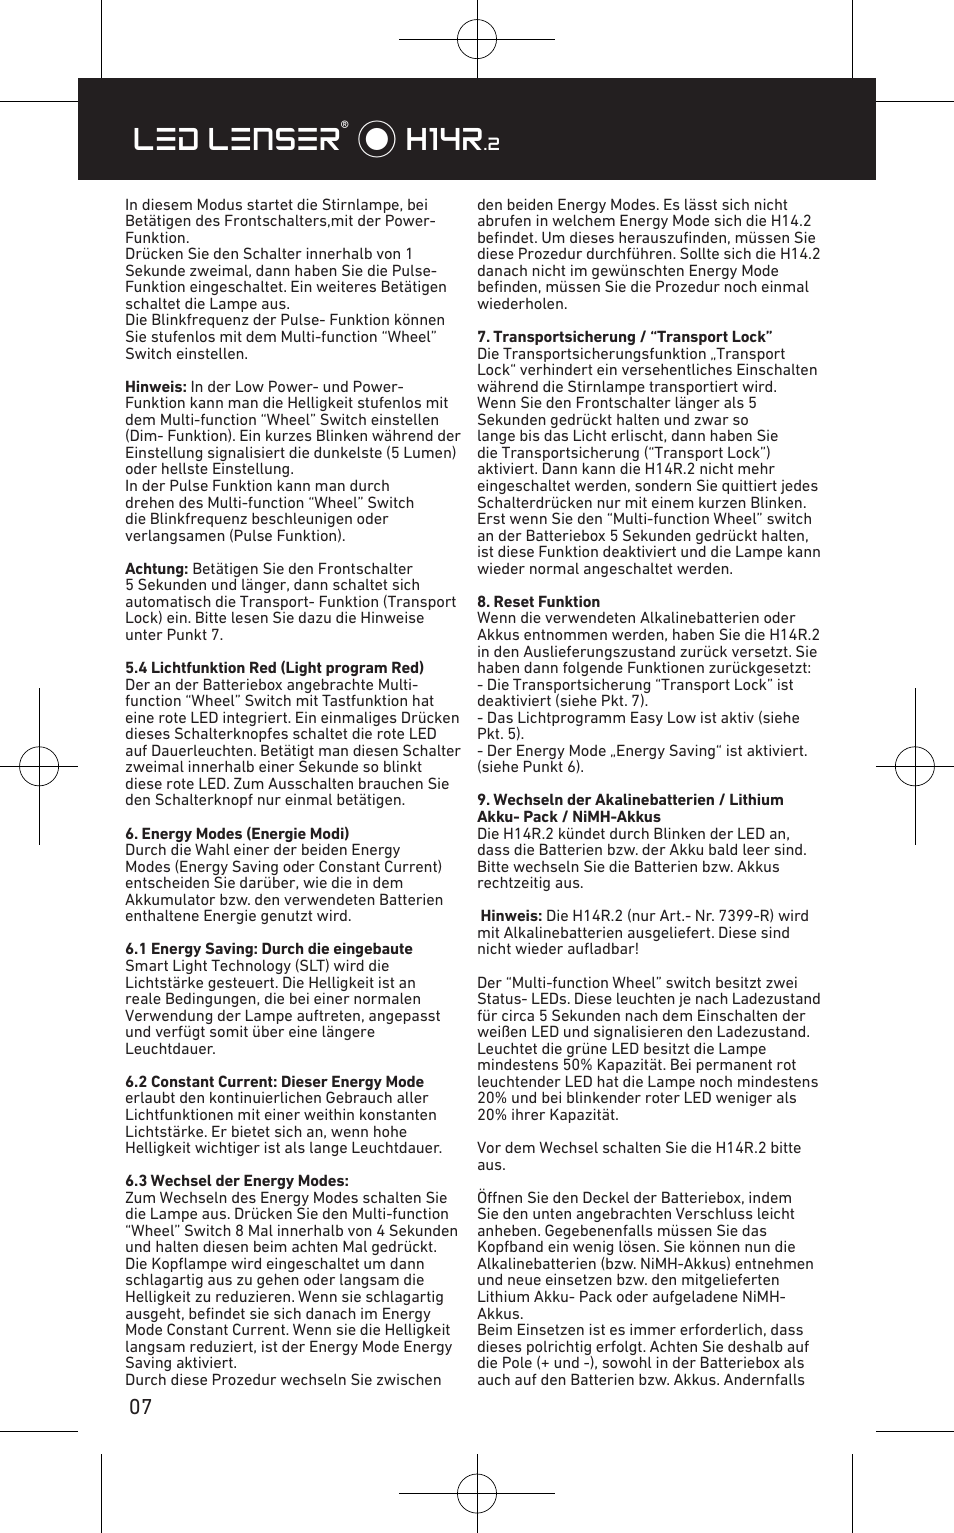 Led lenser® * h14r | LED LENSER H14R.2 User Manual | Page 8 / 53